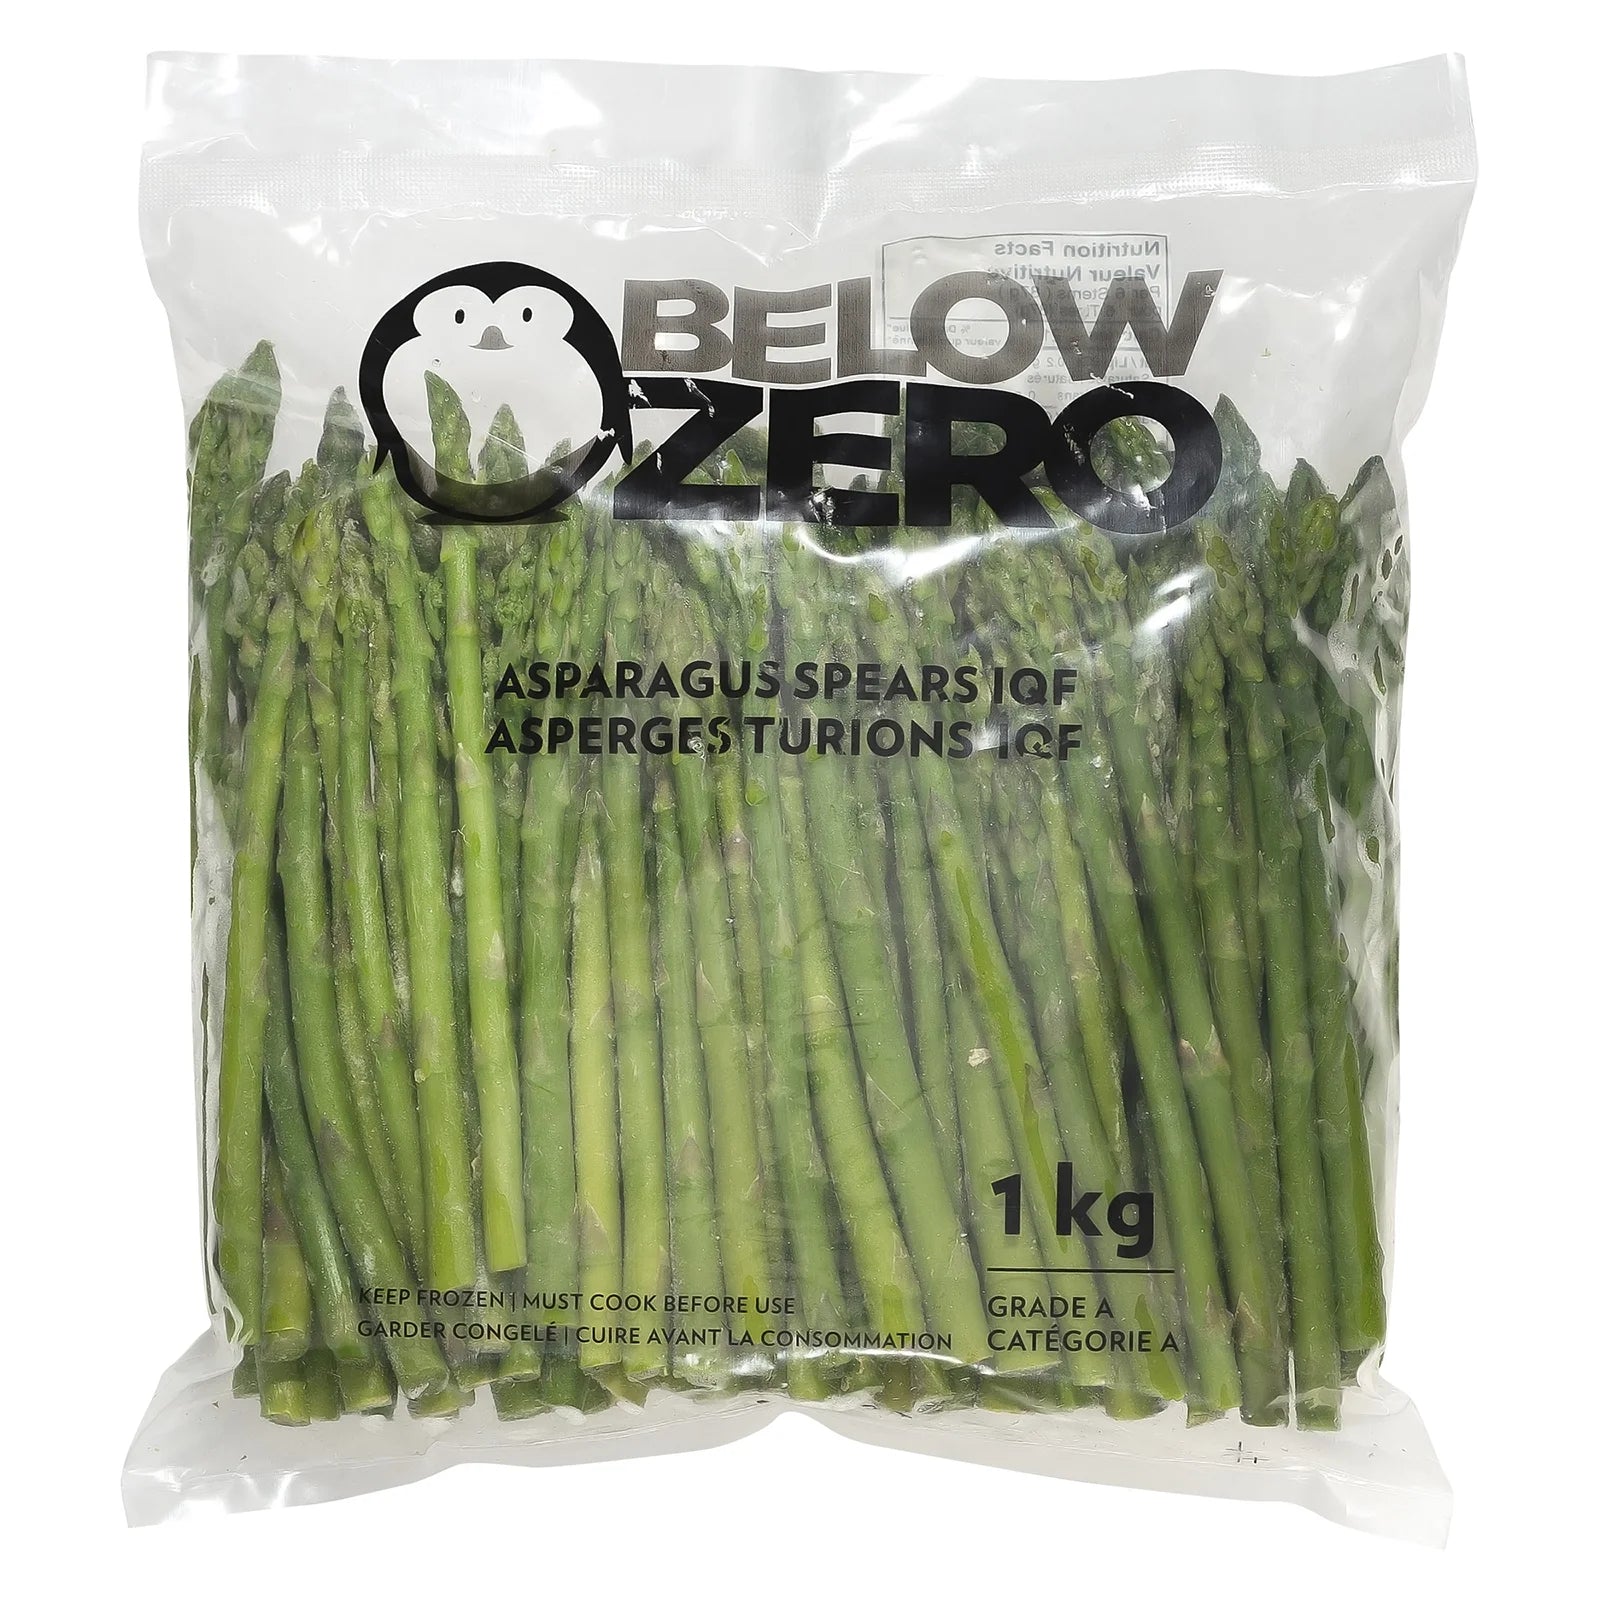 Below Zero - IQF Asparagus Spears Medium